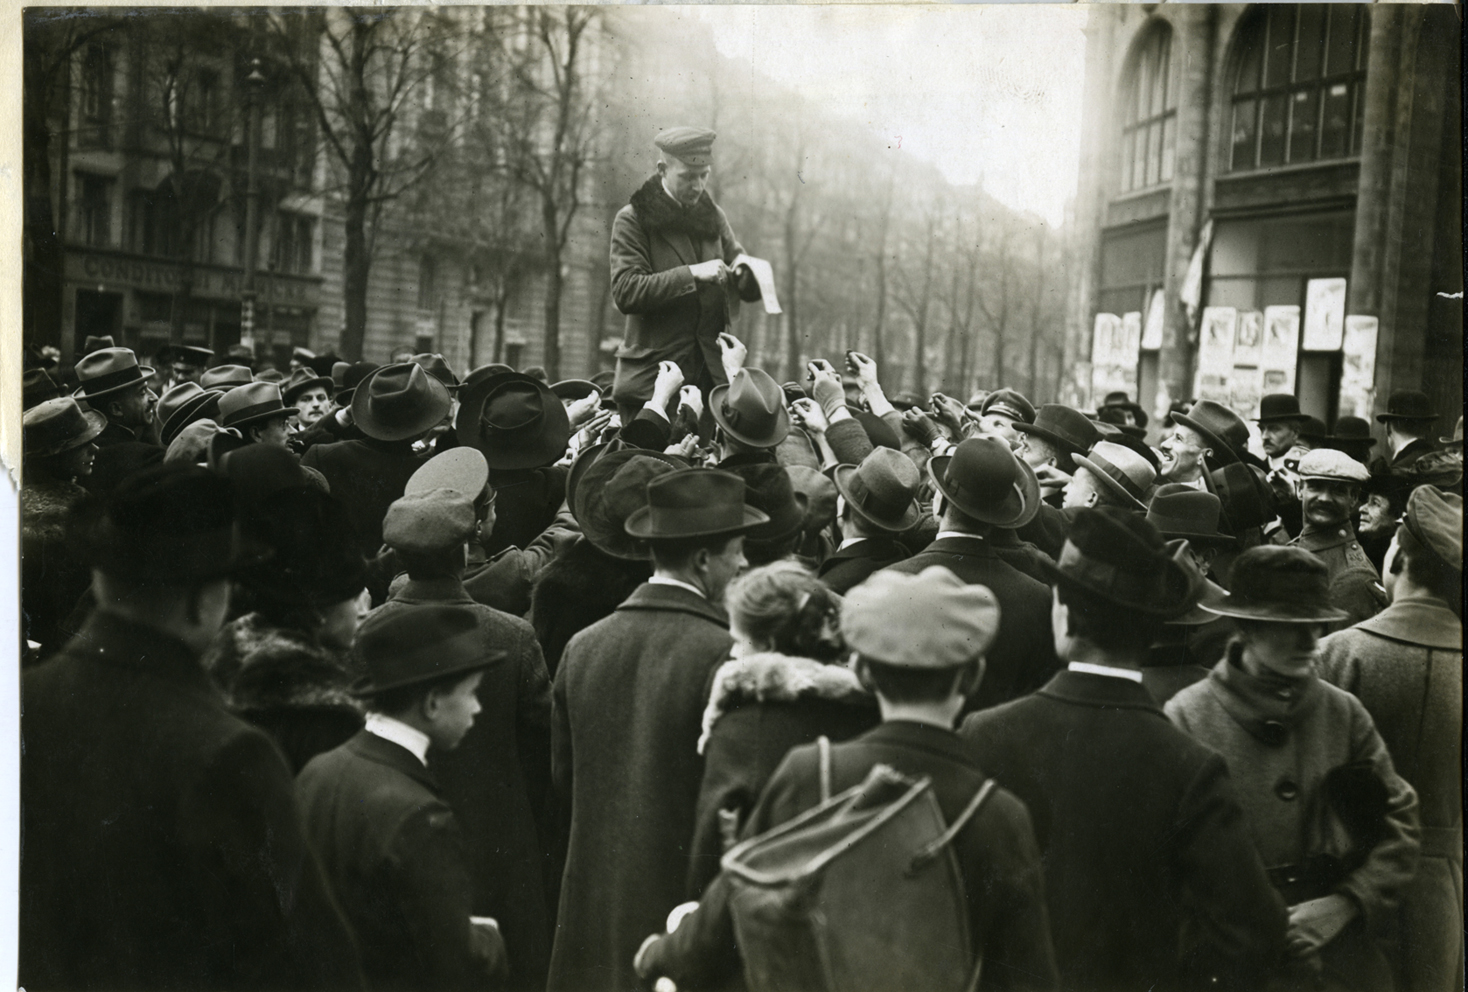 [Generalstreik in Berlin, 1919]